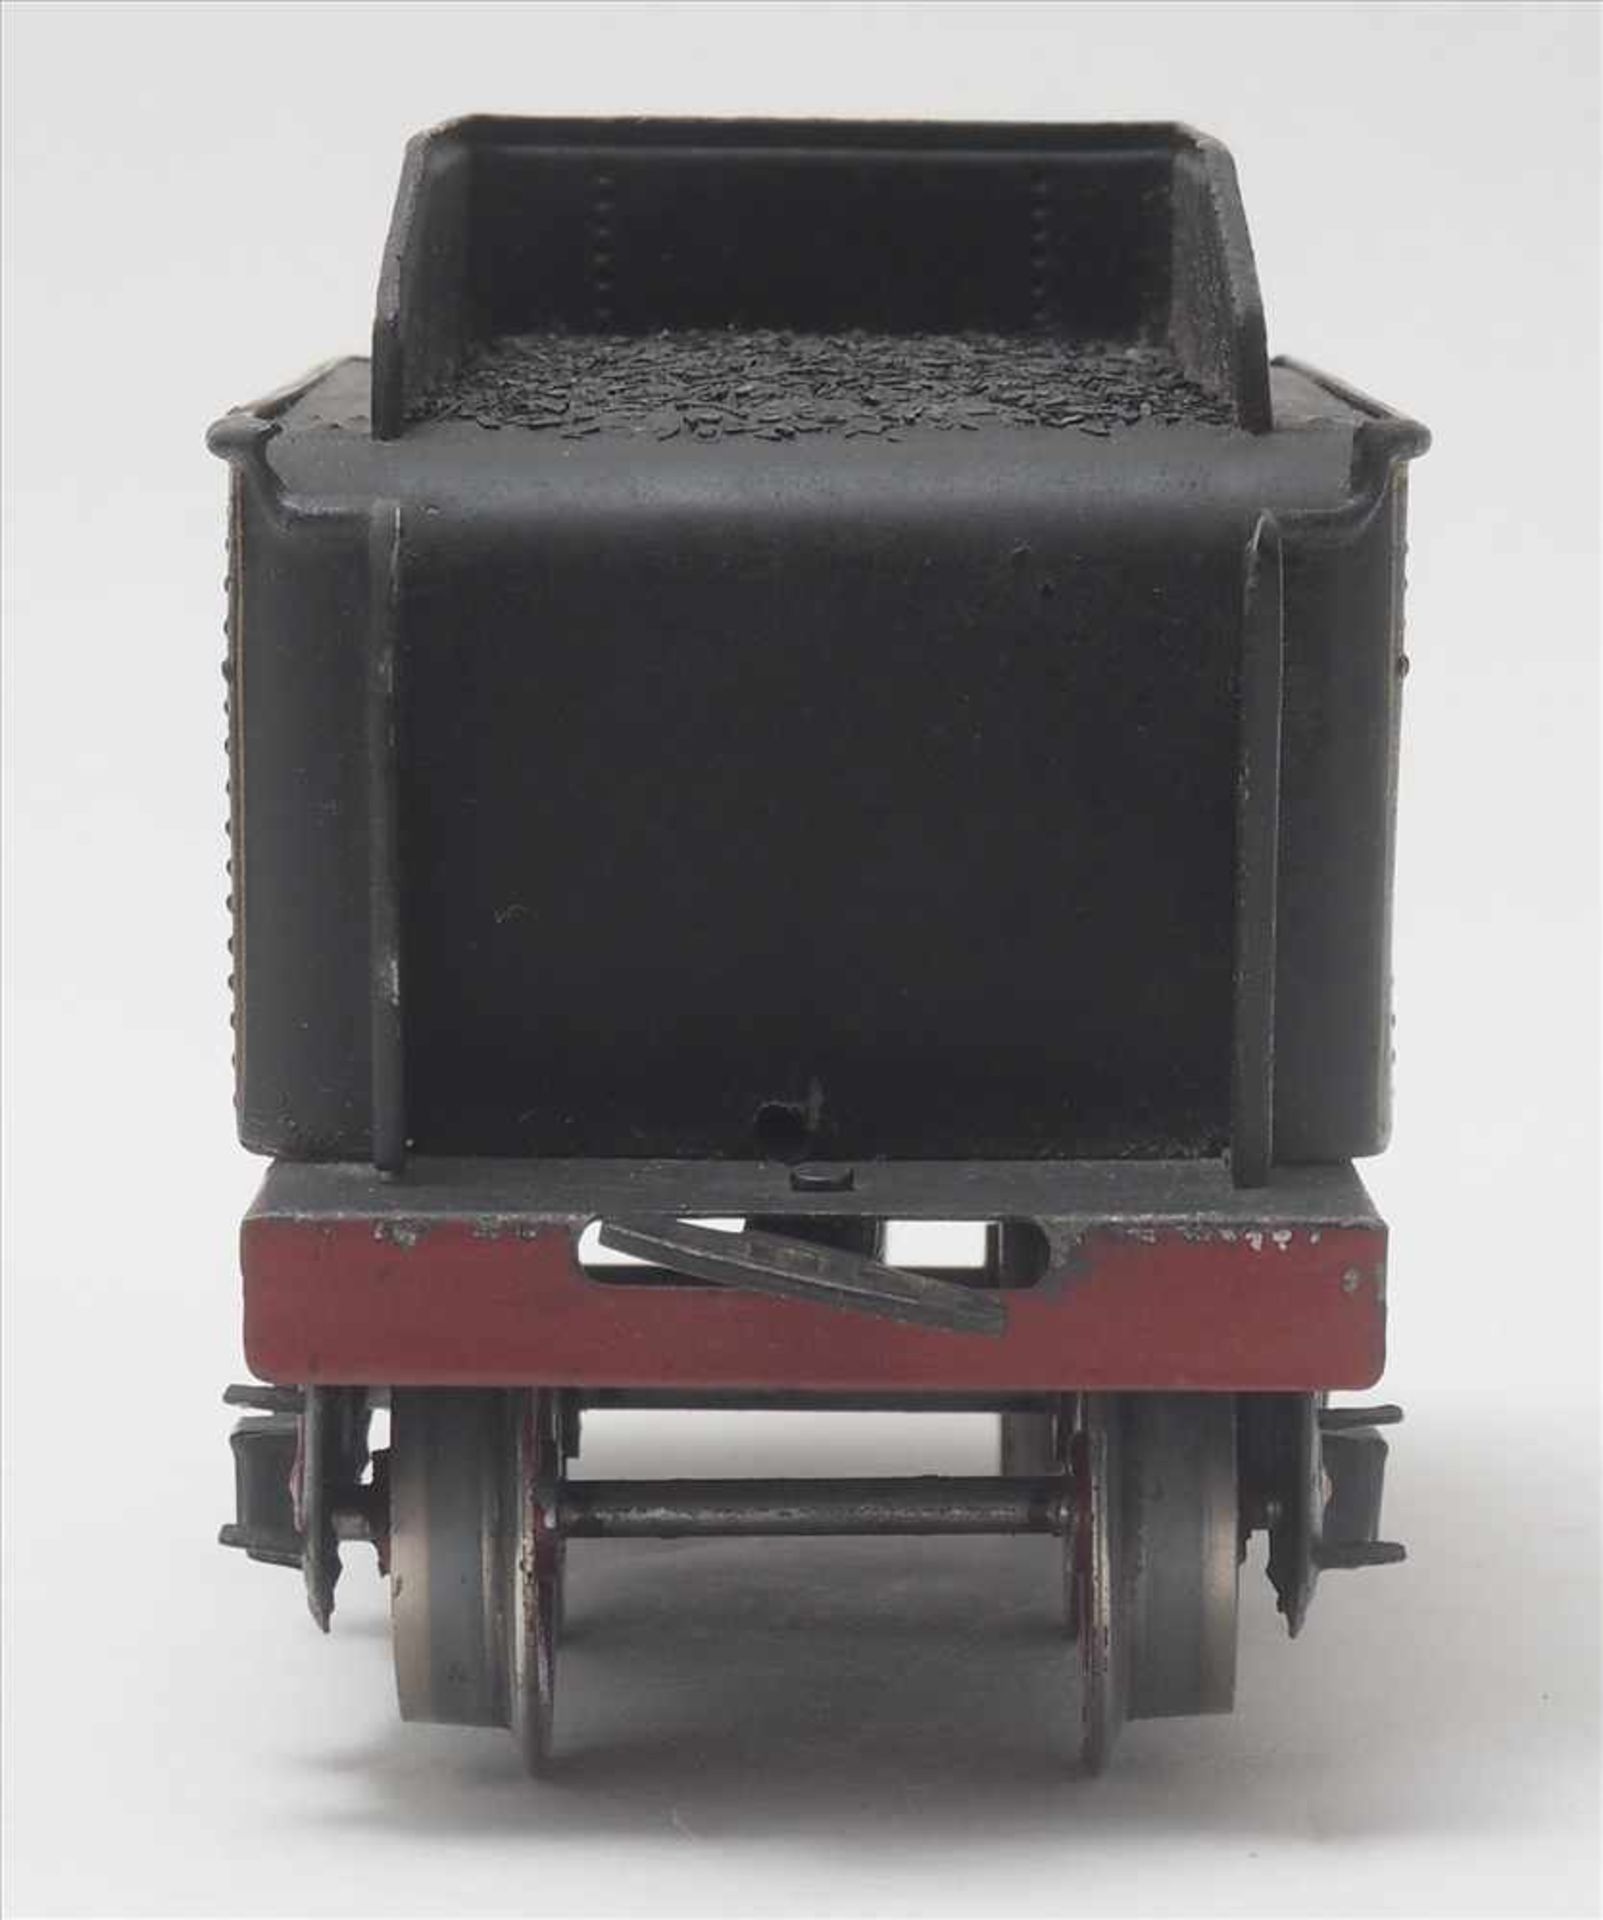 Märklin DampflokSpur 0, 1930-er Jahre. Elektroantrieb. Achsfolge 2B. E70/12920 Dampflokomotive mit - Bild 8 aus 9